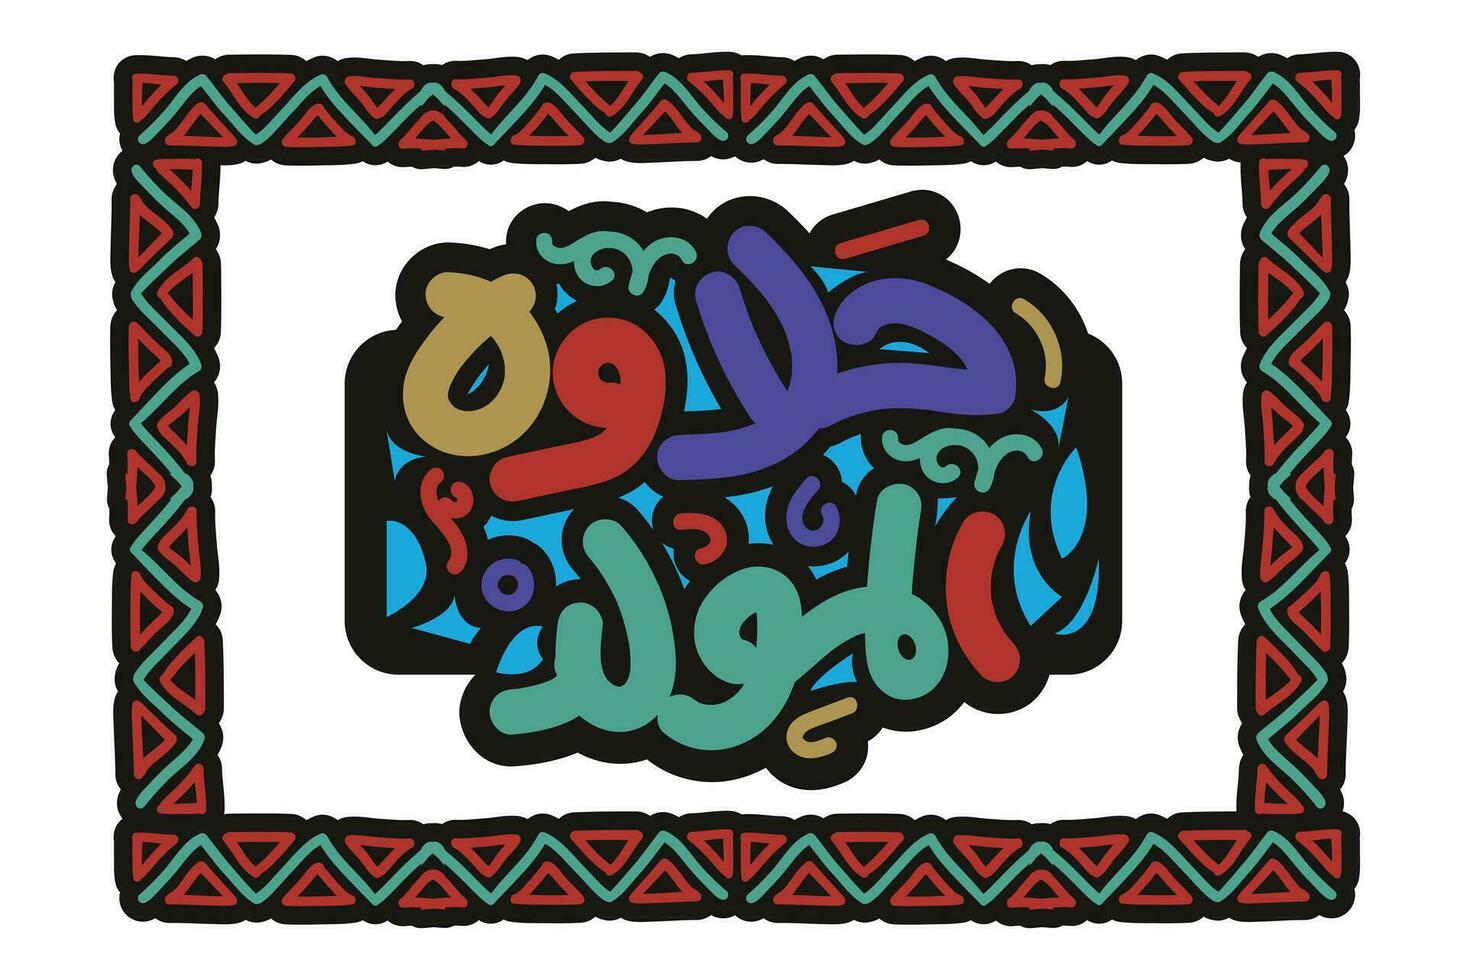 halawet al mollig im Arabisch Übersetzung Geburtstag Süßigkeiten im Arabisch Sprache handgeschrieben Kalligraphie Prophet mohamed Geburt islamisch Feier Typografie Karte Design vektor